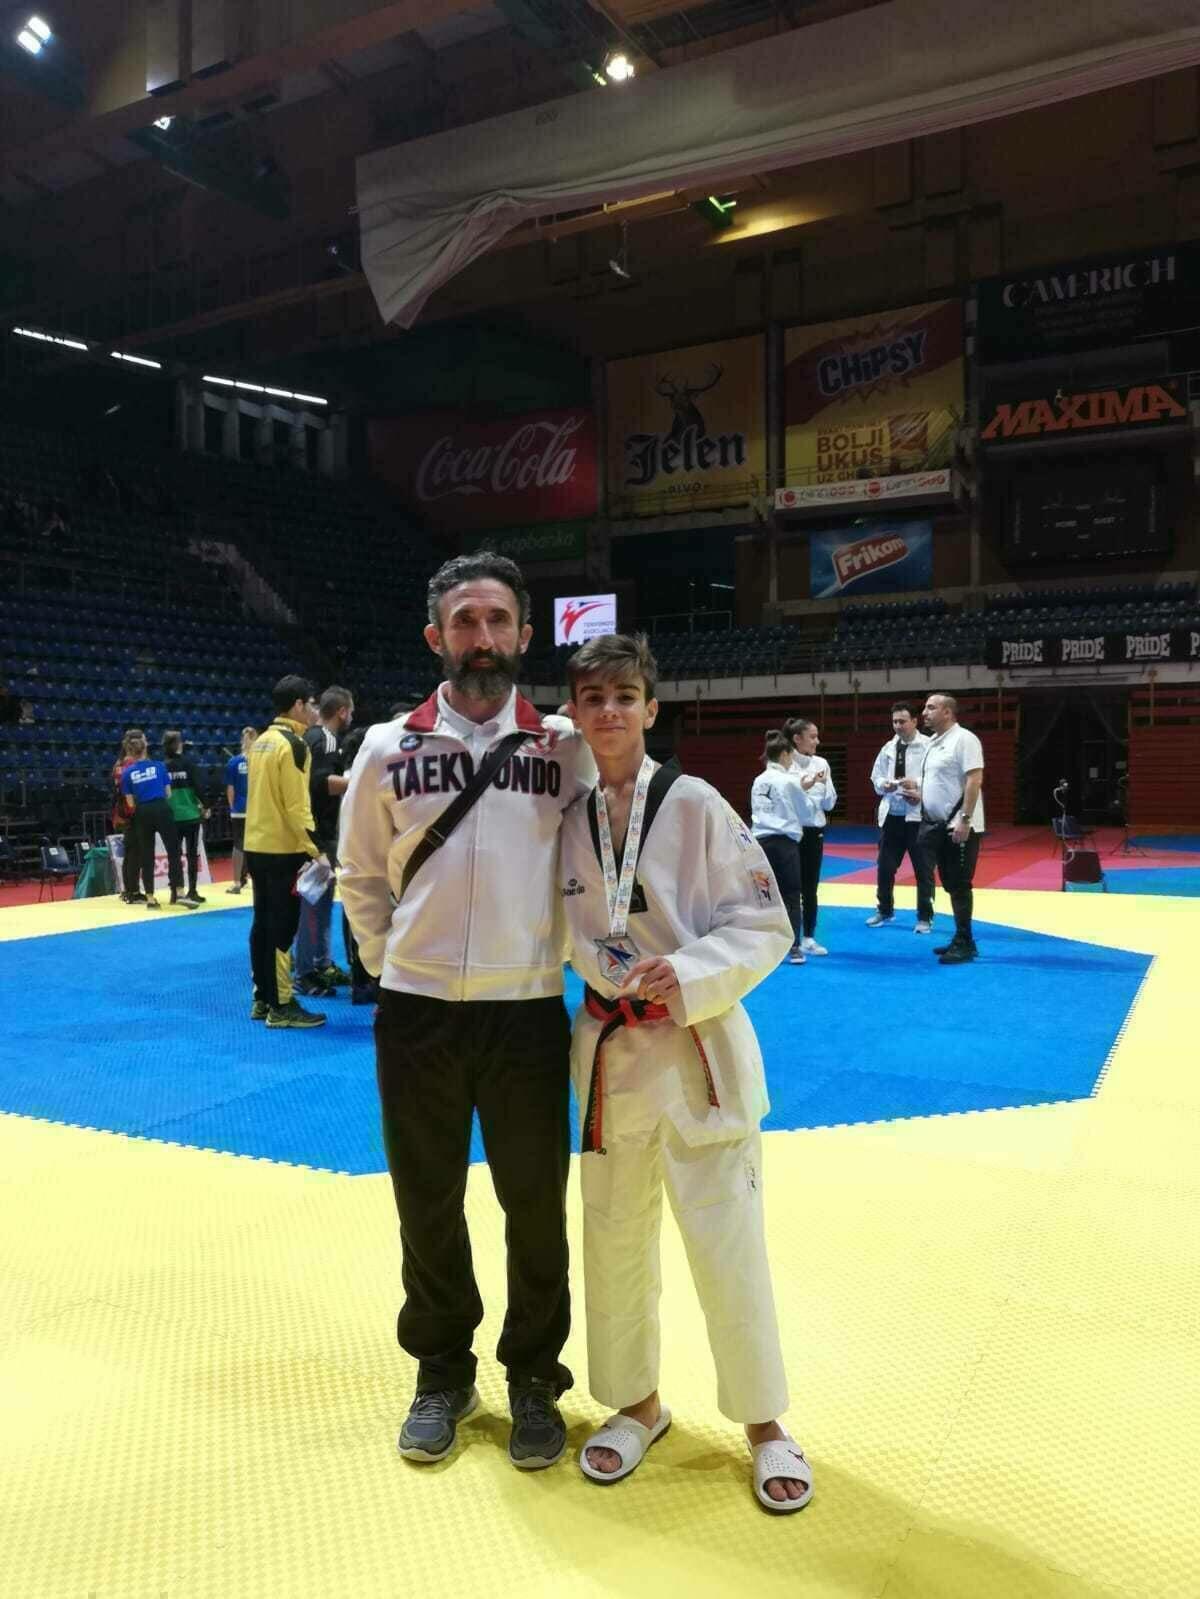 Krom Llorca, del Club Taekwondo Finestrat, medalla de plata en el Open Internacional disputado en Serbia